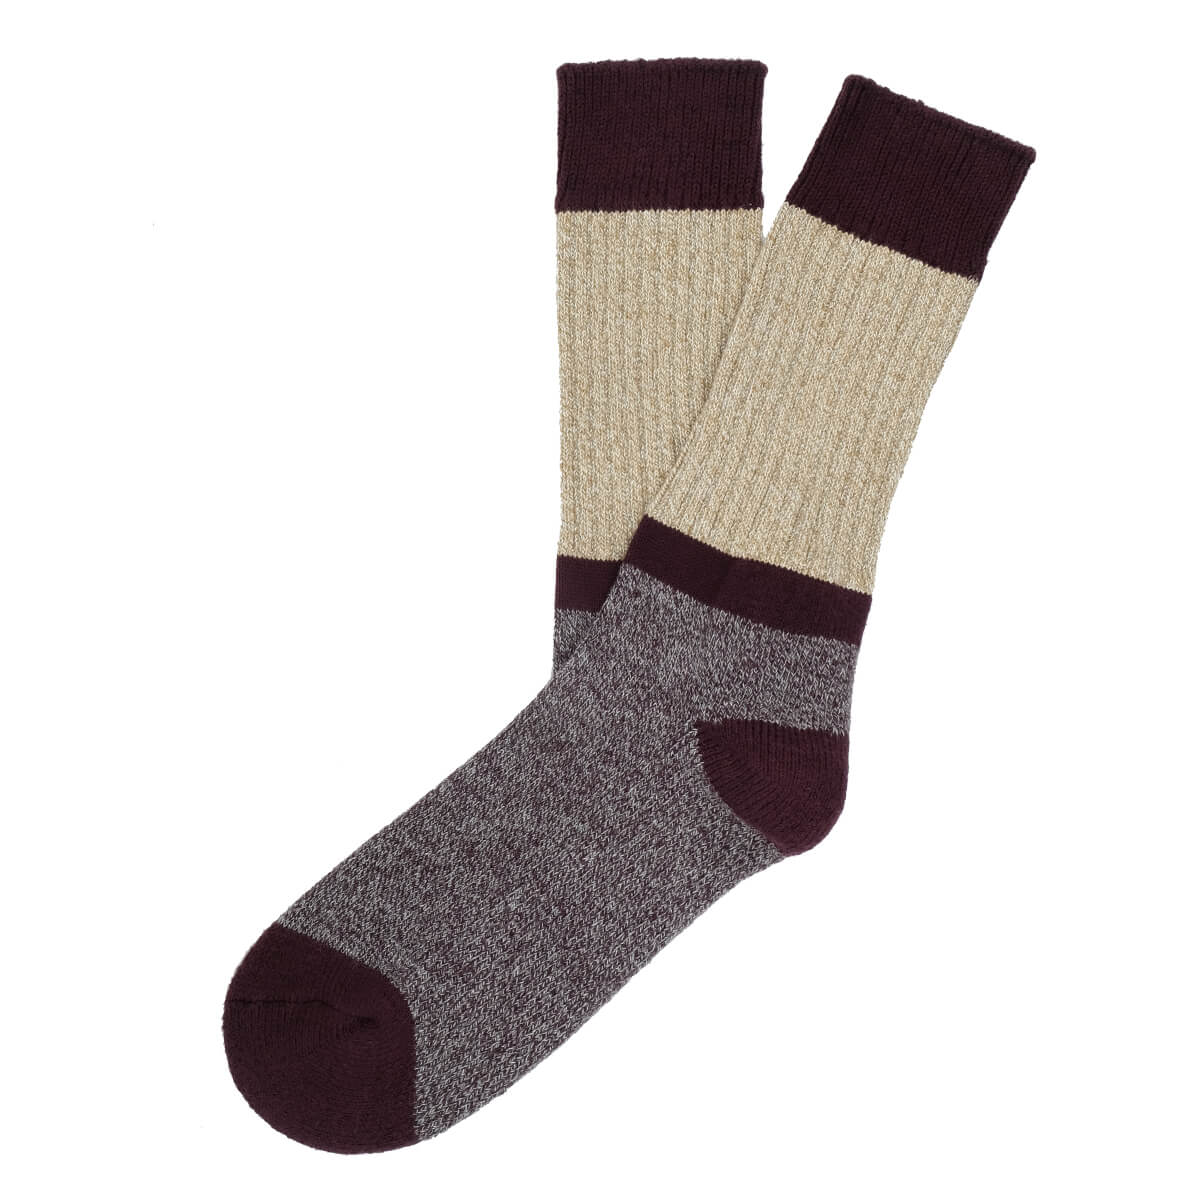 Mens Socks - Get The Boot Duo Men's Socks - Bordeaux⎪Etiquette Clothiers